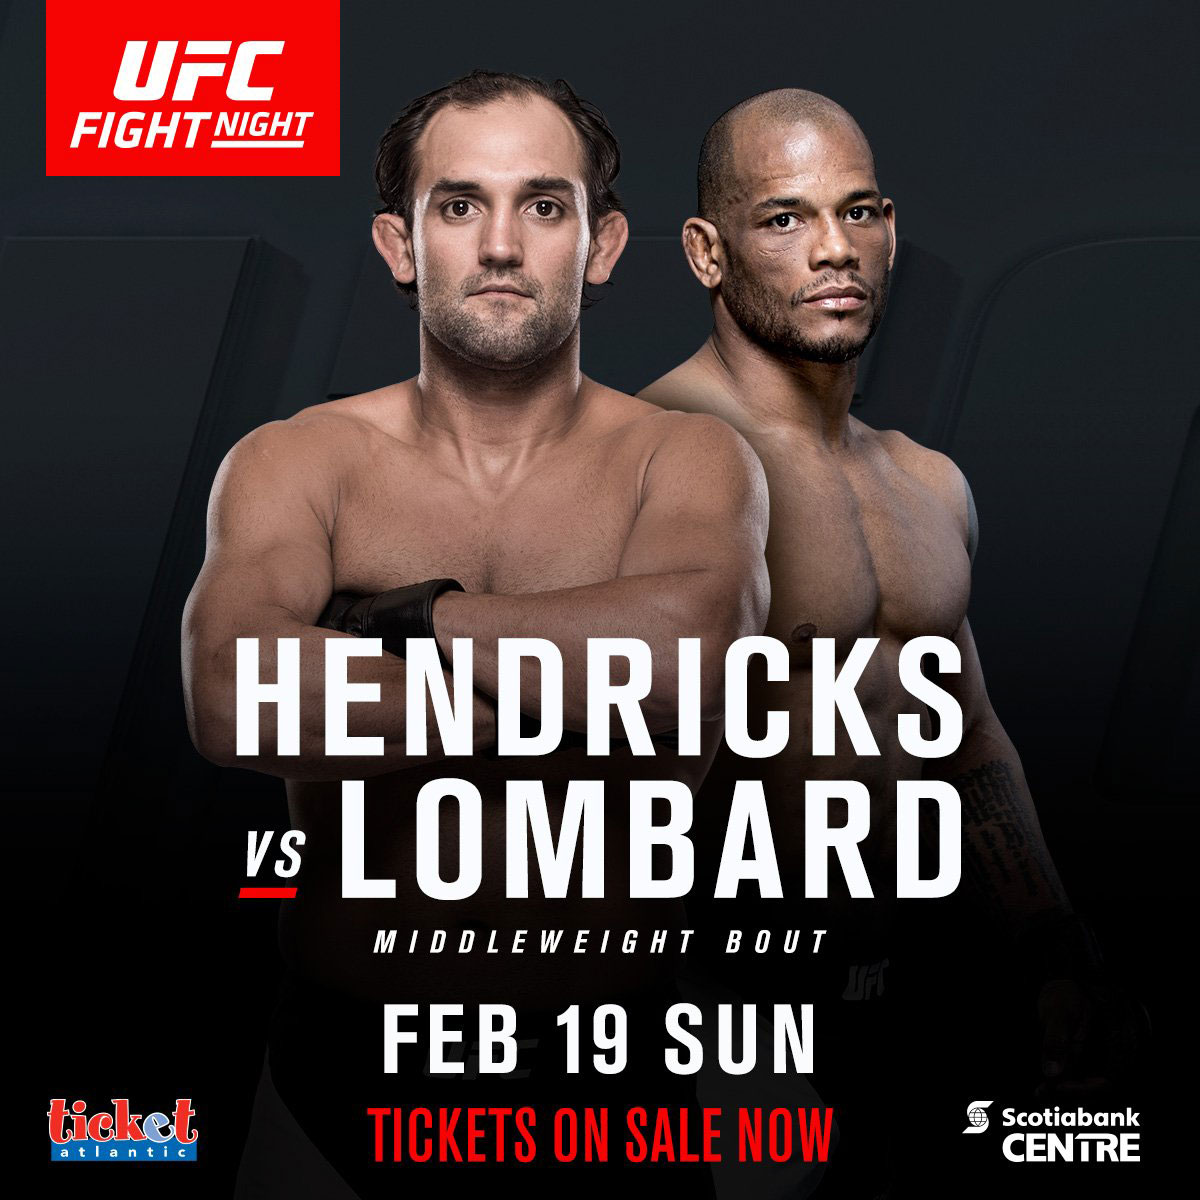 Poster/affiche UFC Fight Night 105 - Halifax